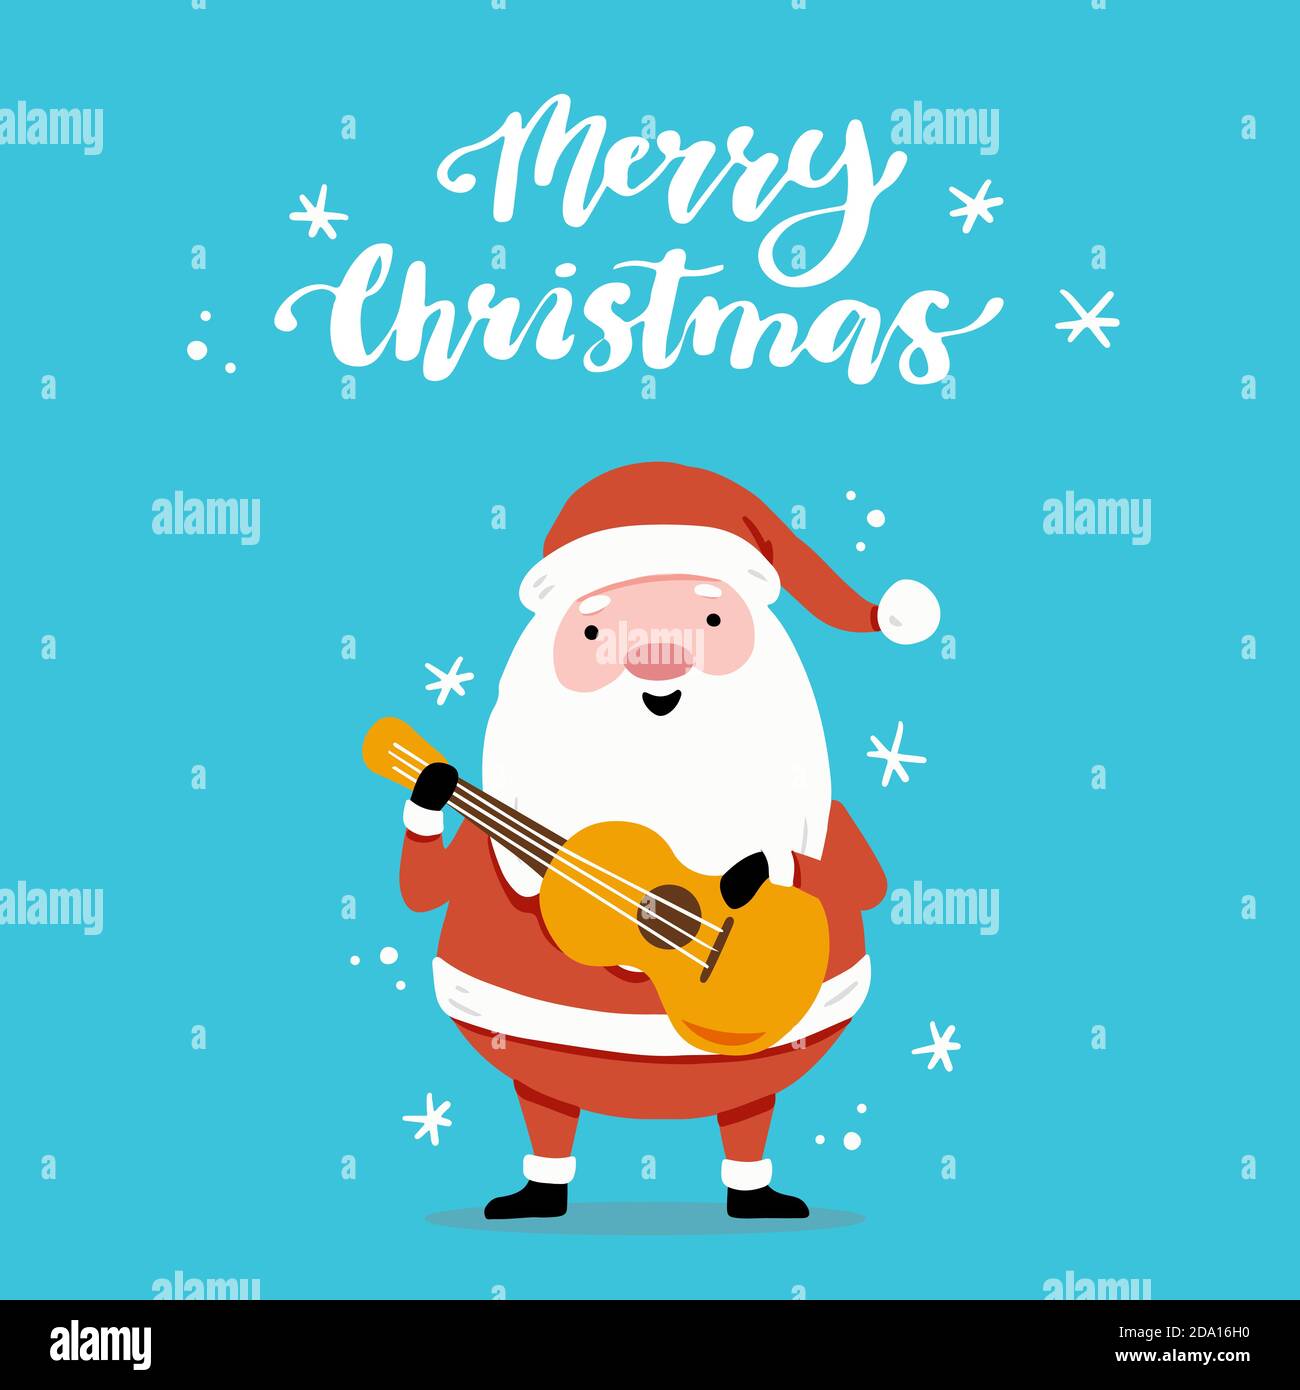 Carte de vœux de Noël avec personnage de dessin animé du Père Noël, éléments dessinés à la main, lettres qoute Joyeux Noël. Illustration de Vecteur